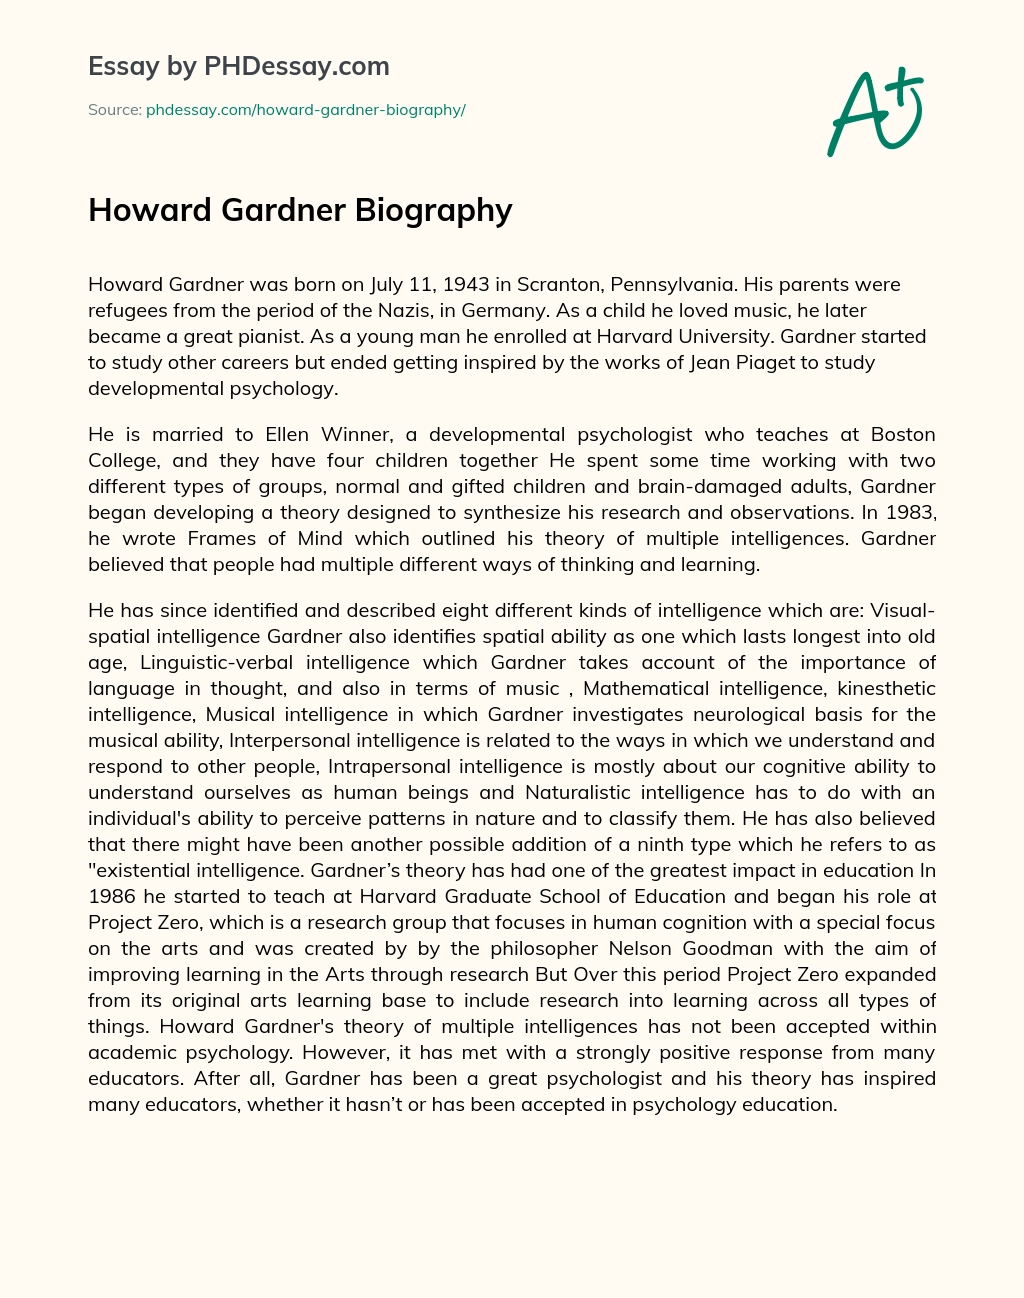 Howard Gardner Biography essay